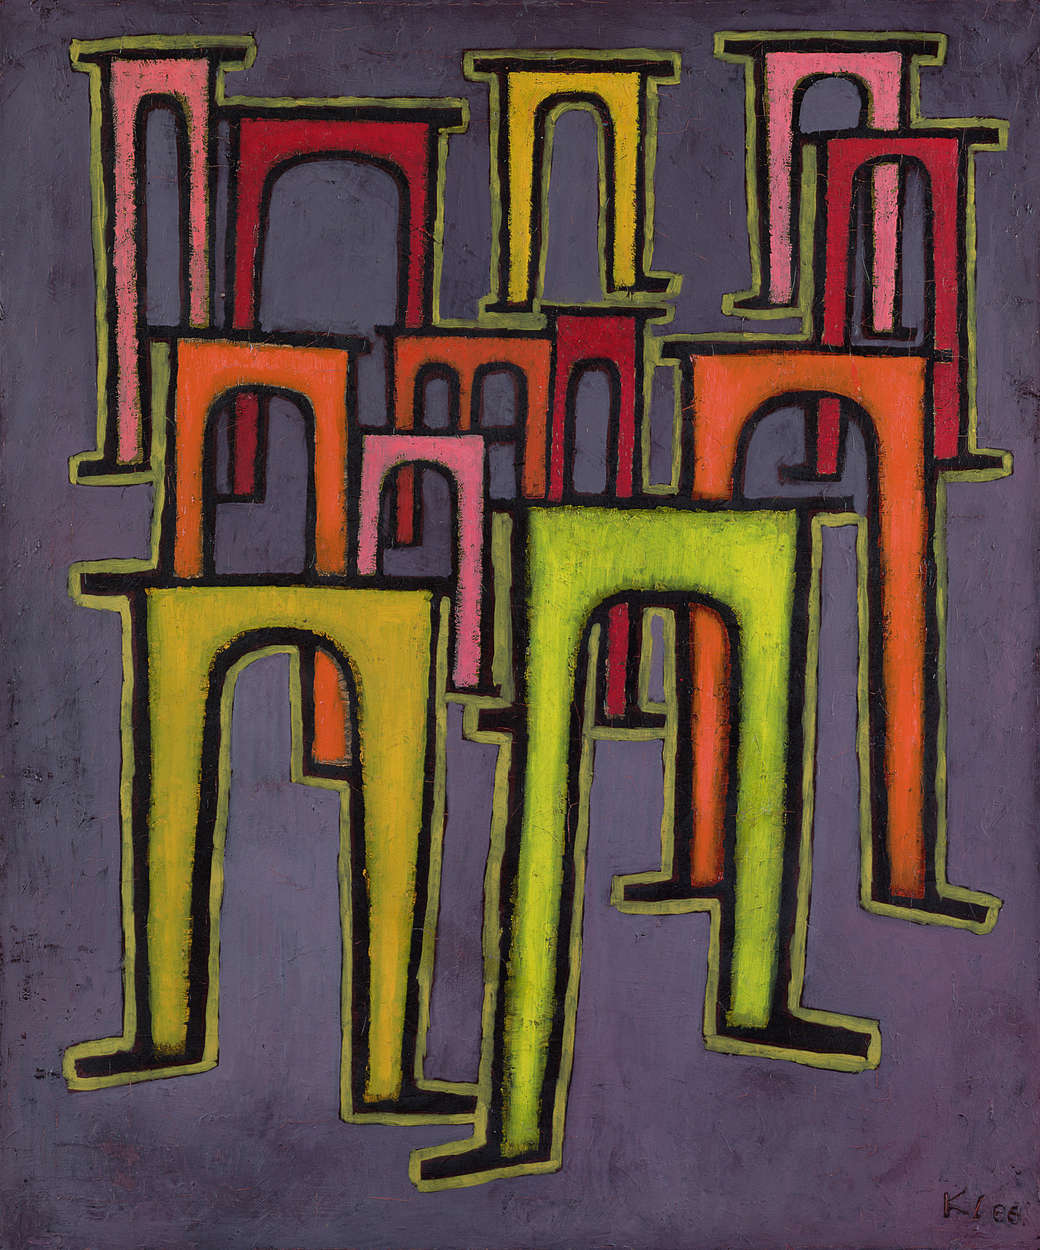             Fotomurali "Rivoluzione del viadotto" di Paul Klee
        